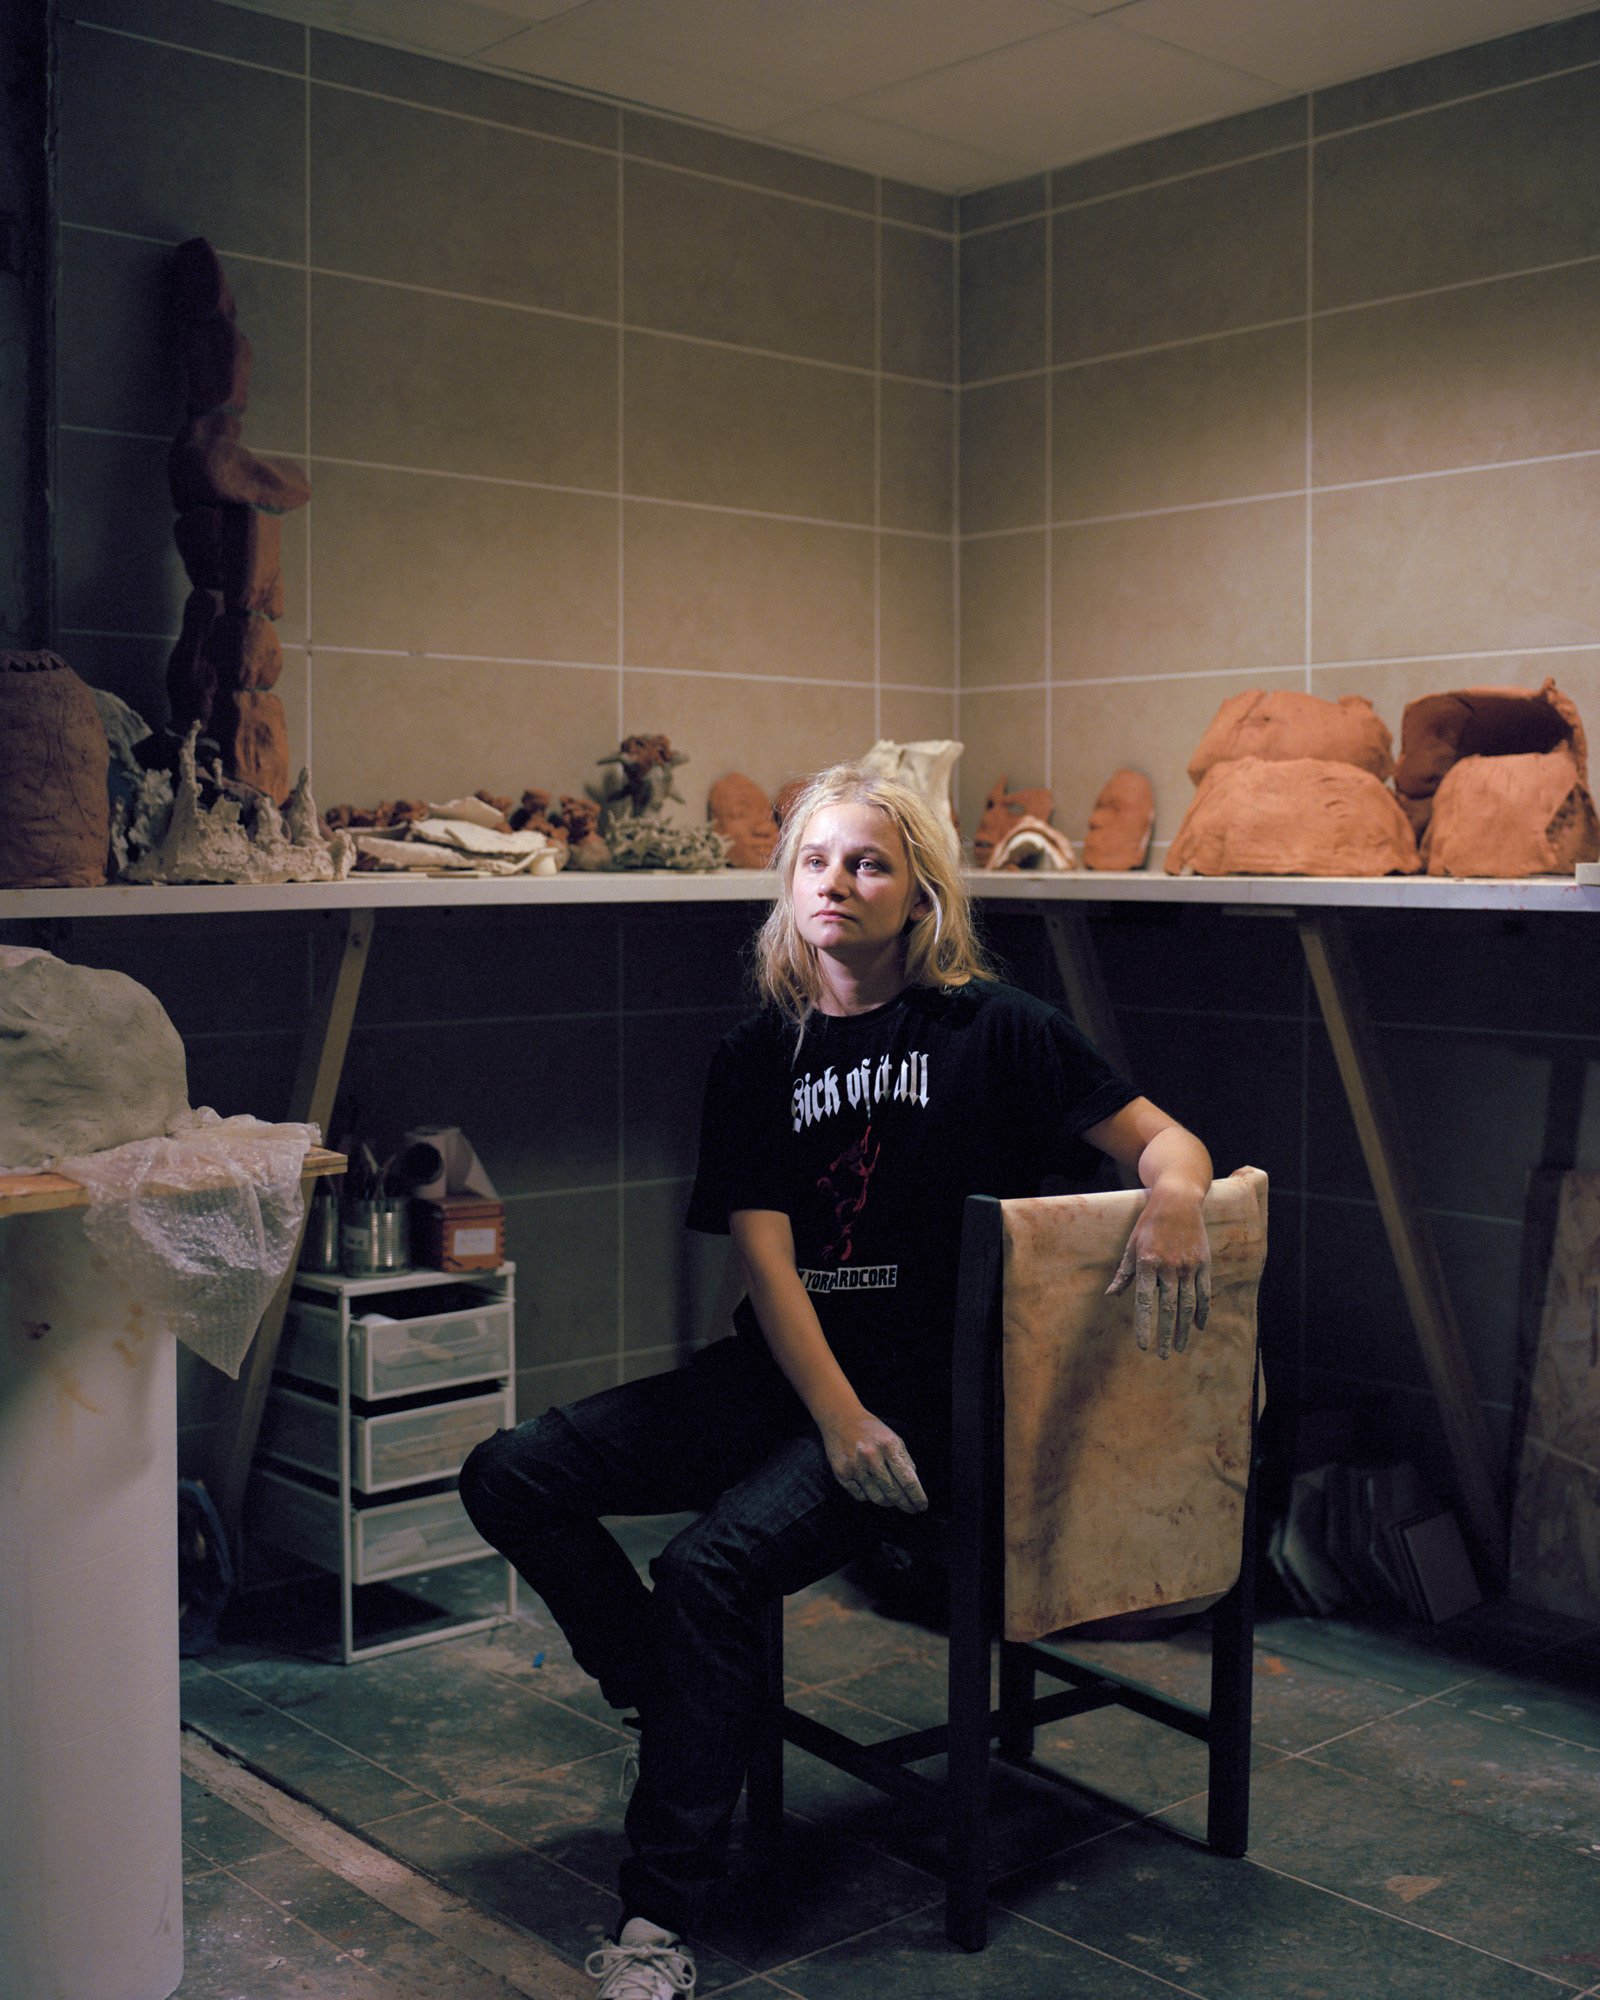  31 octobre 2022. Paris, France. Alina Izmailova, artiste et étudiante russe originaire d’Oufa (30), pose dans un des ateliers de sculpture de l’Atelier des Artistes en Exil. Etudiante à l’école d’art Rodchenko à Moscou, elle arrive en février 2022 à